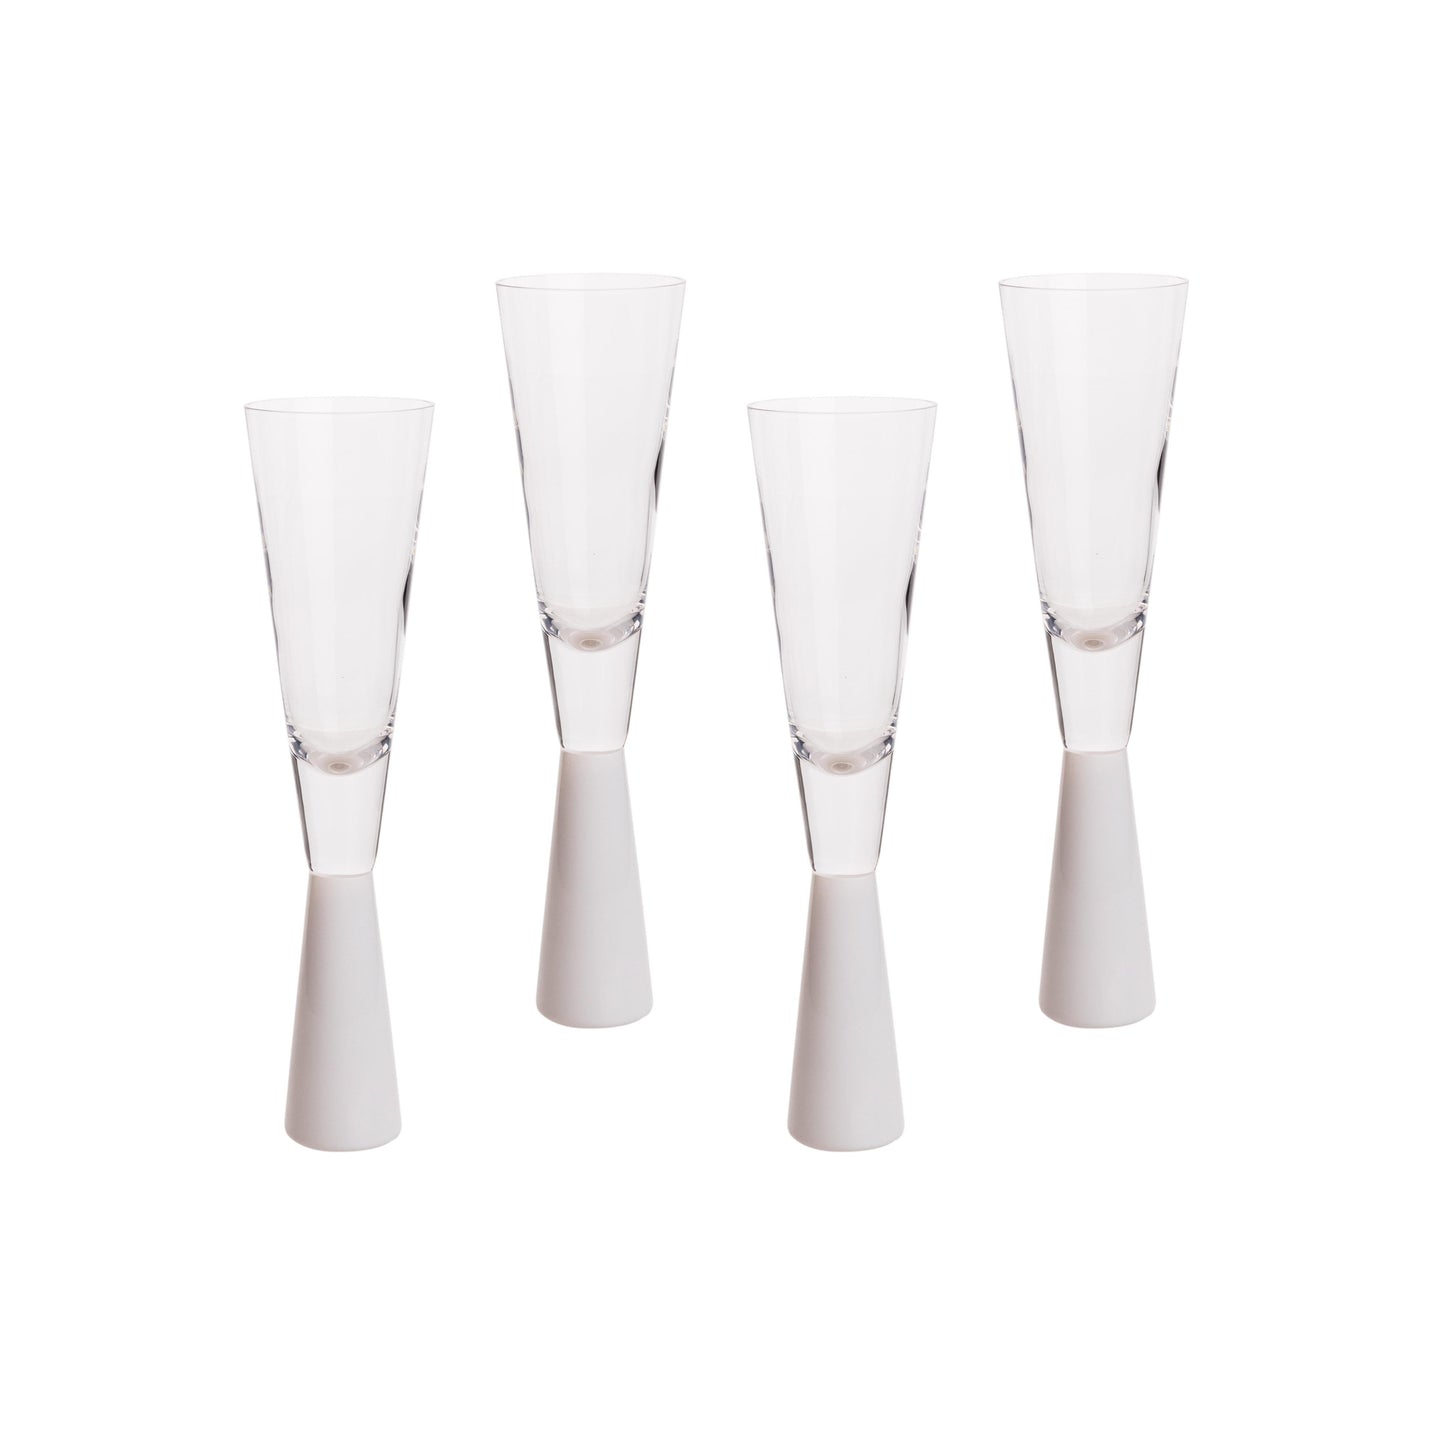 loosha white champagne glasses - set of 4